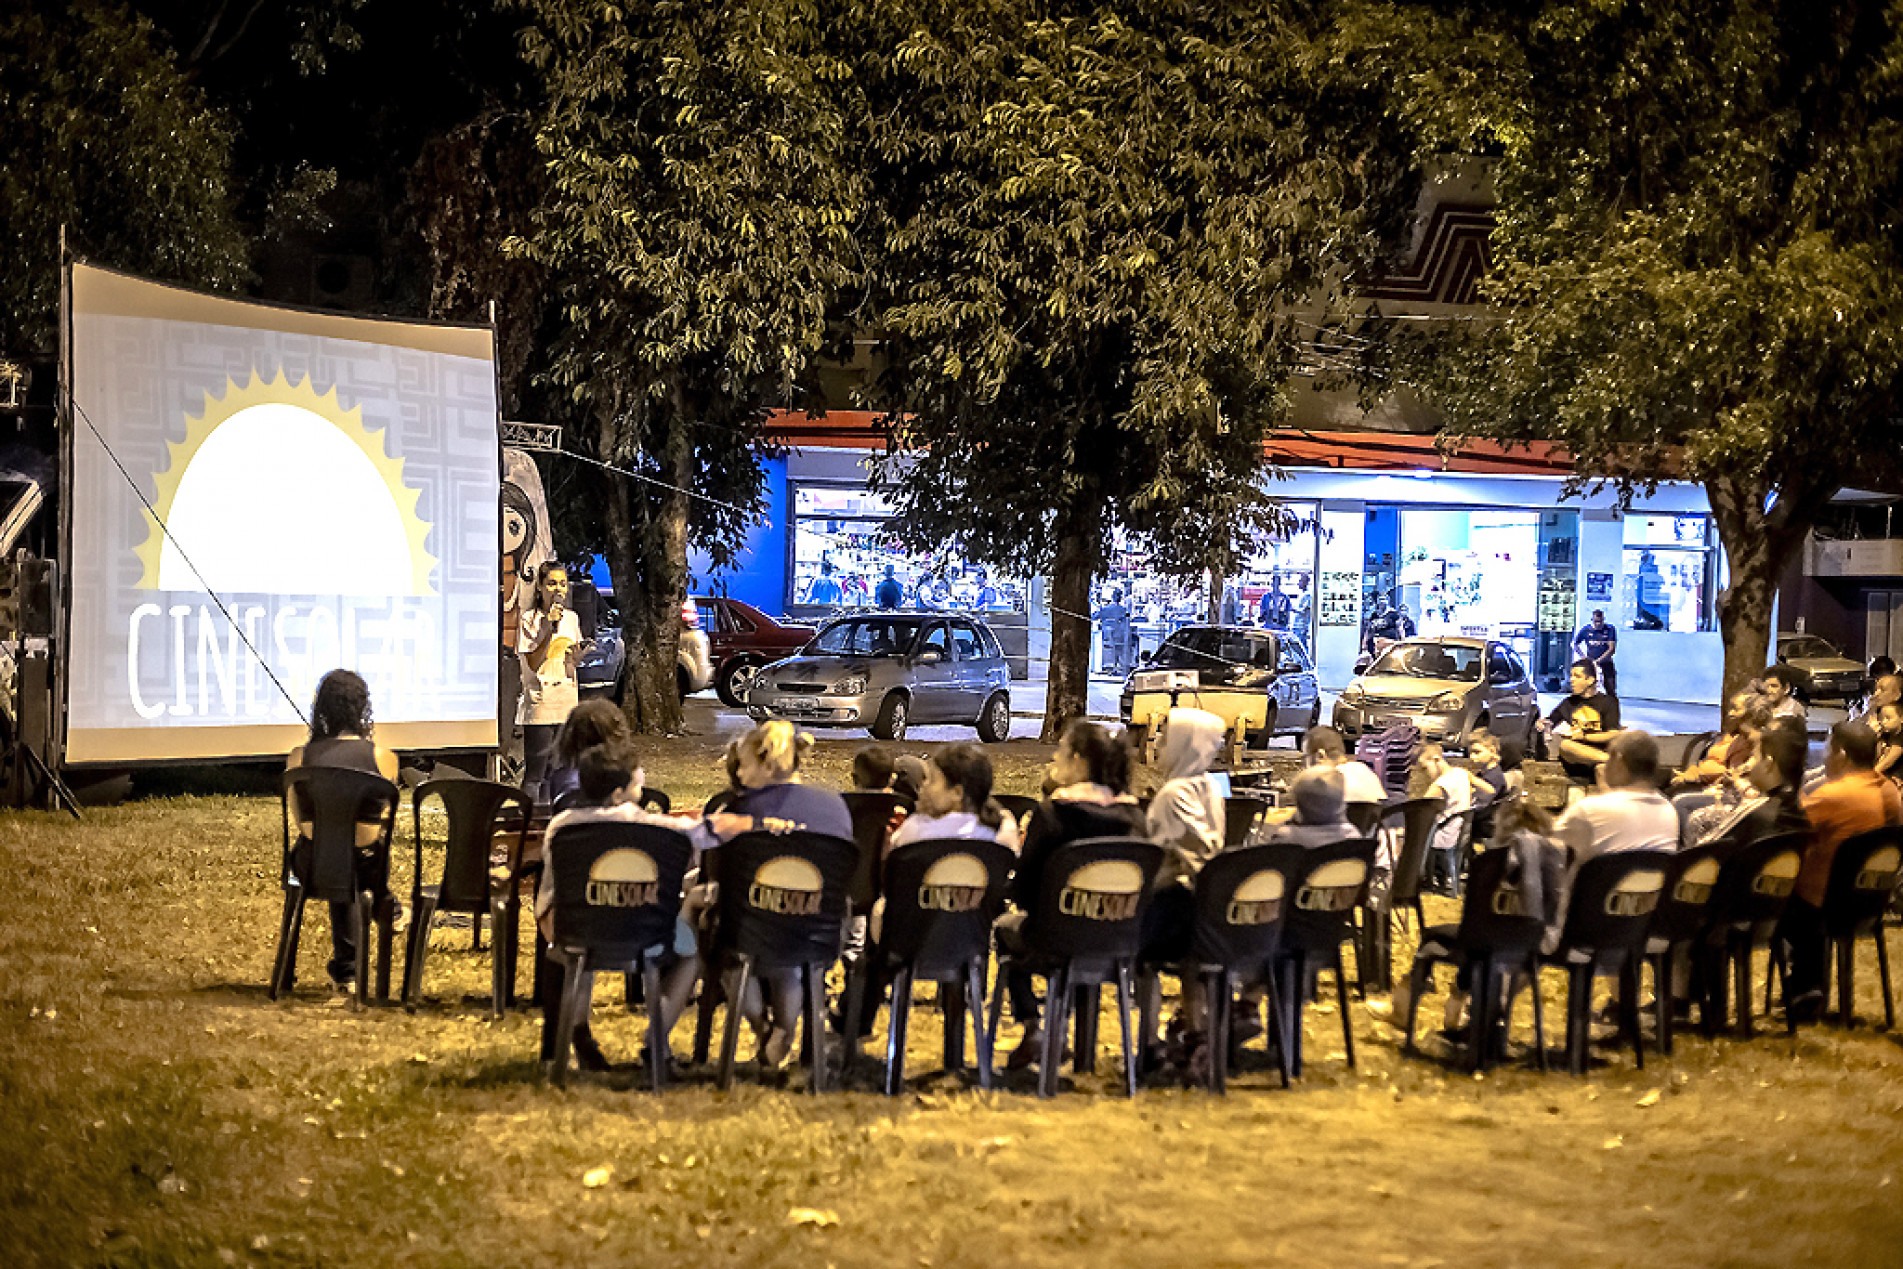 Exibições do cinema itinerante são feitas em praças e espaços públicos